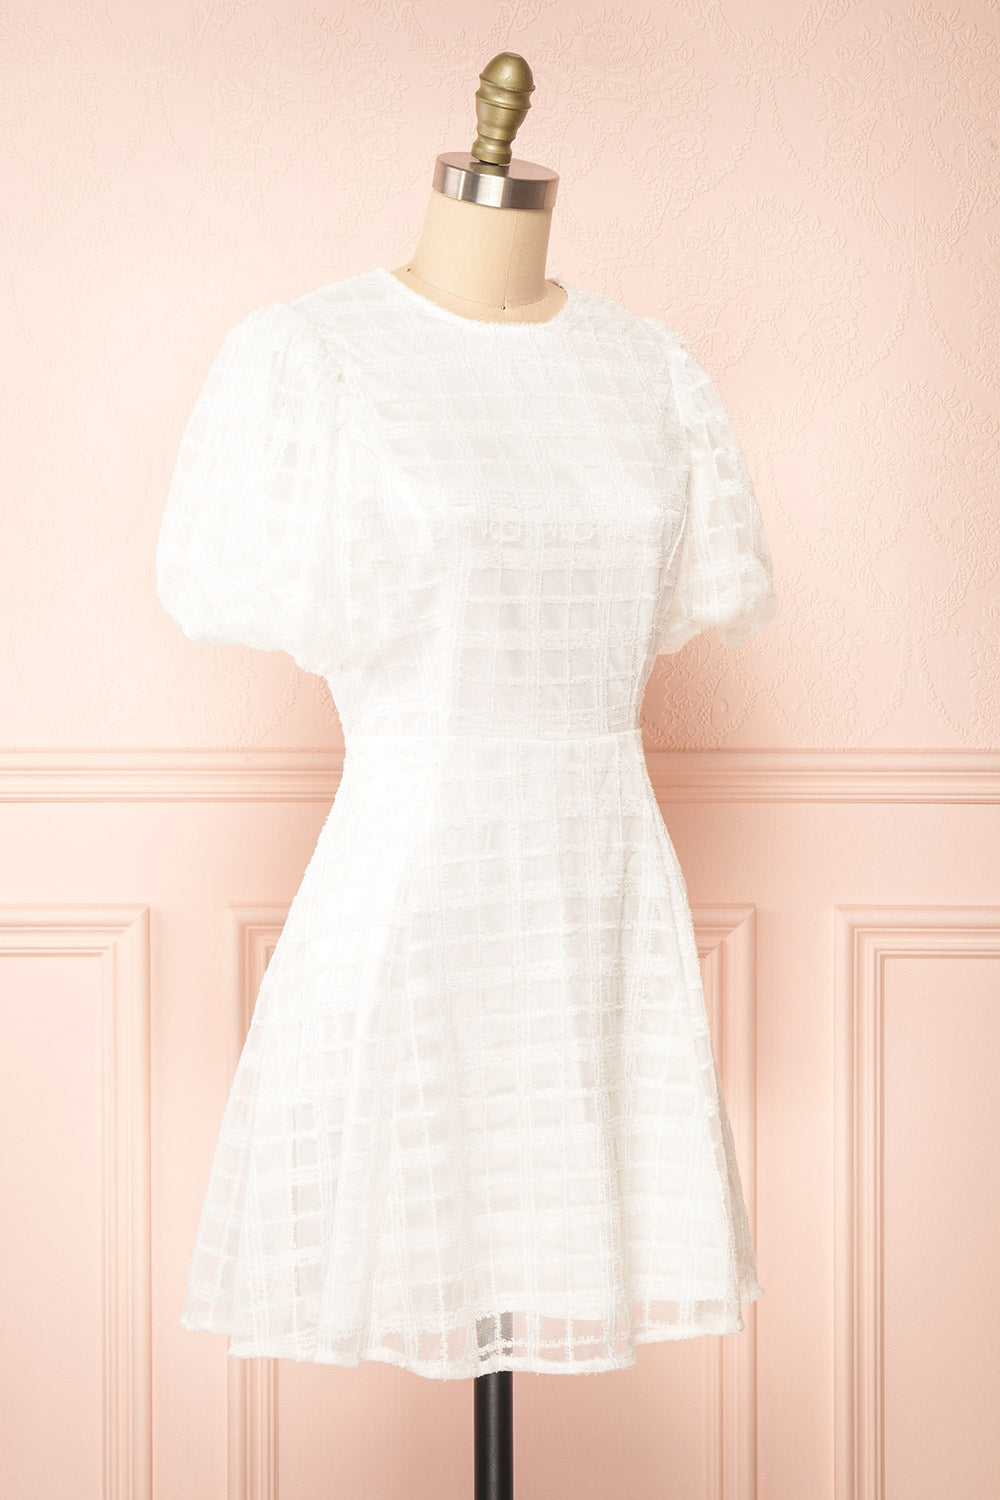 Lena Short White A-line Dress | Boutique 1861 side view